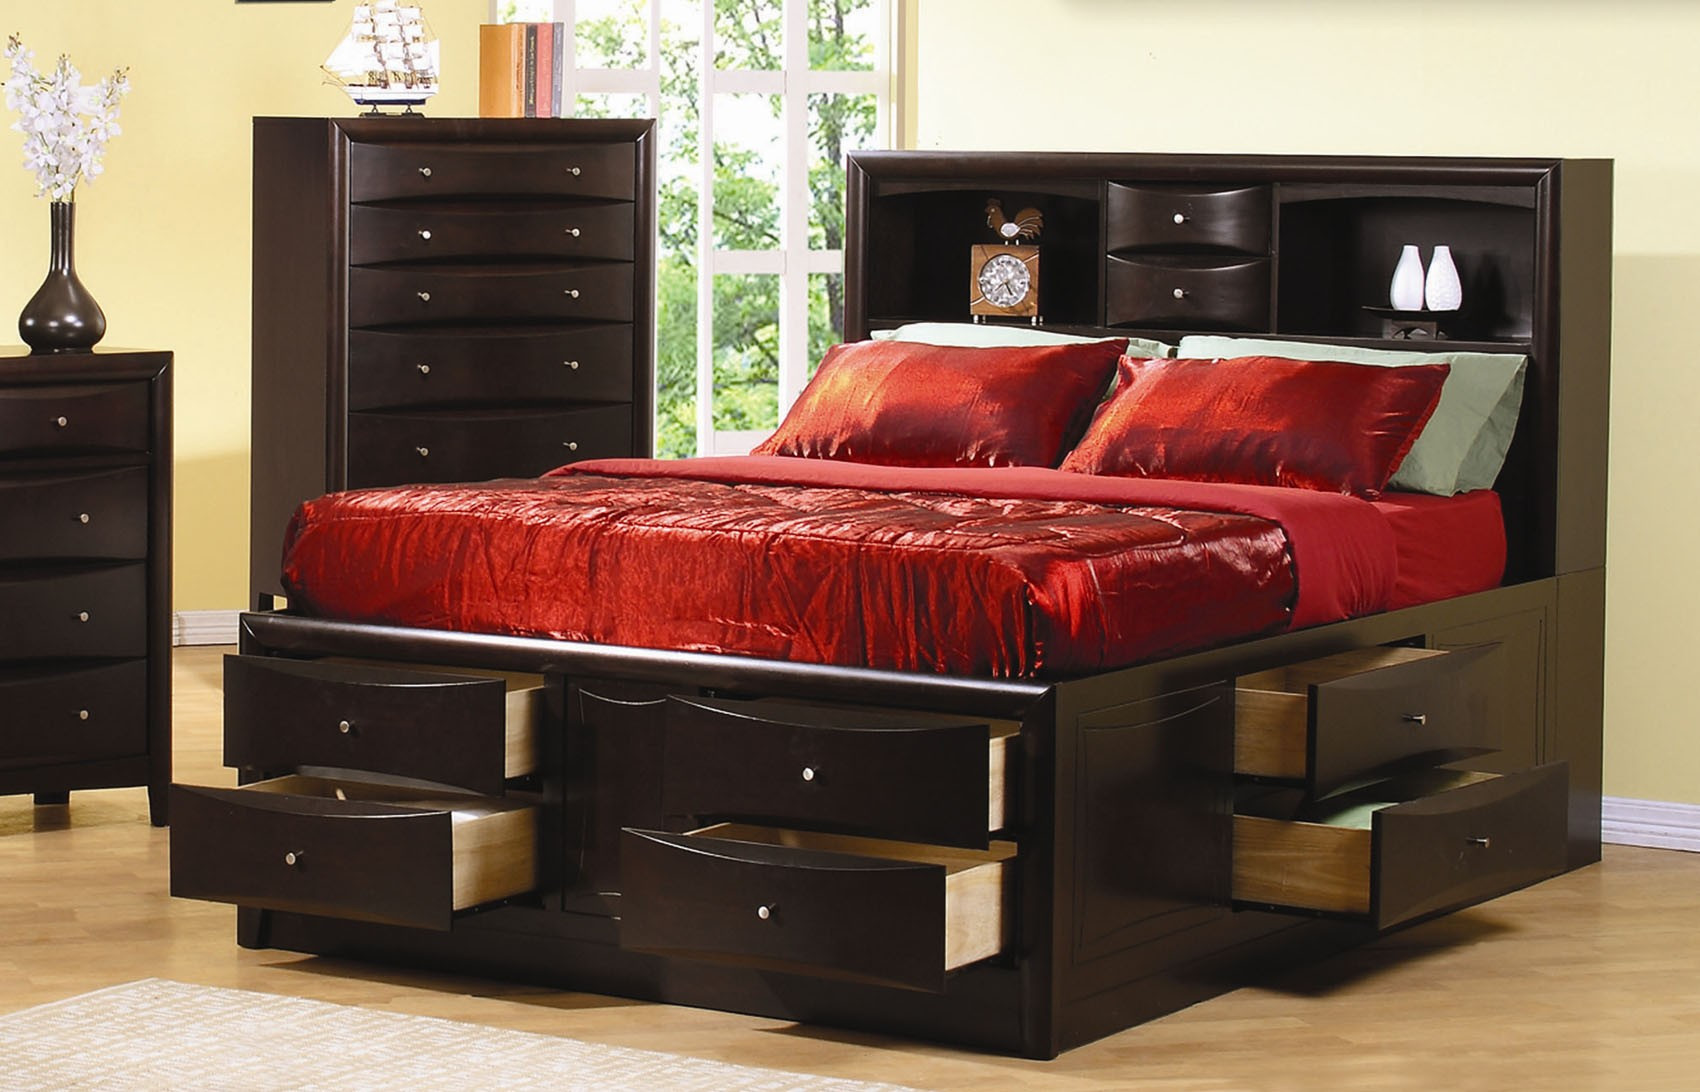 Queen Bedroom Sets With Storage
 Queen Storage Bed Plans